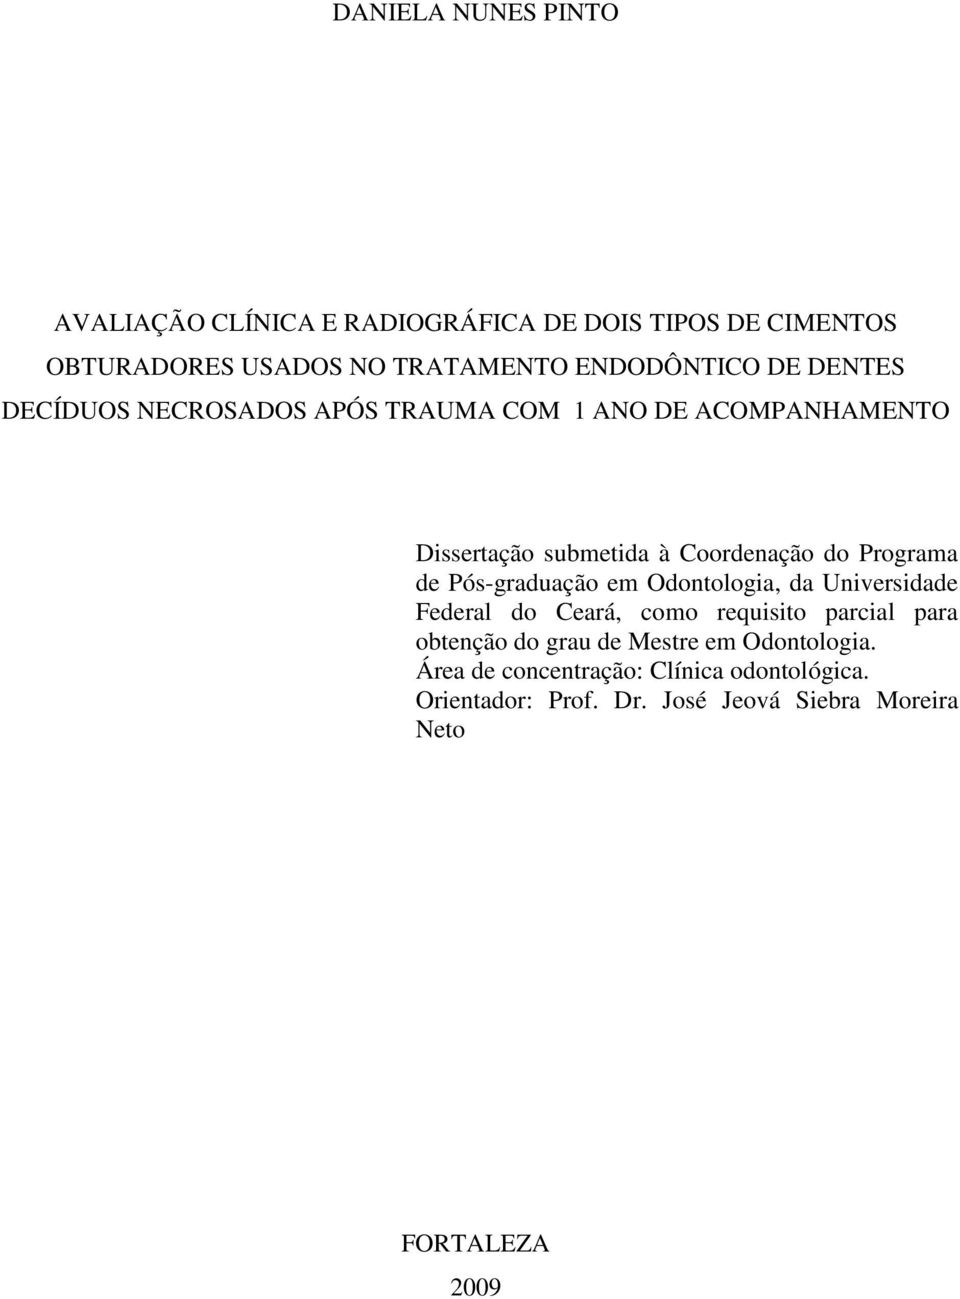 Programa de Pós-graduação em Odontologia, da Universidade Federal do Ceará, como requisito parcial para obtenção do grau de